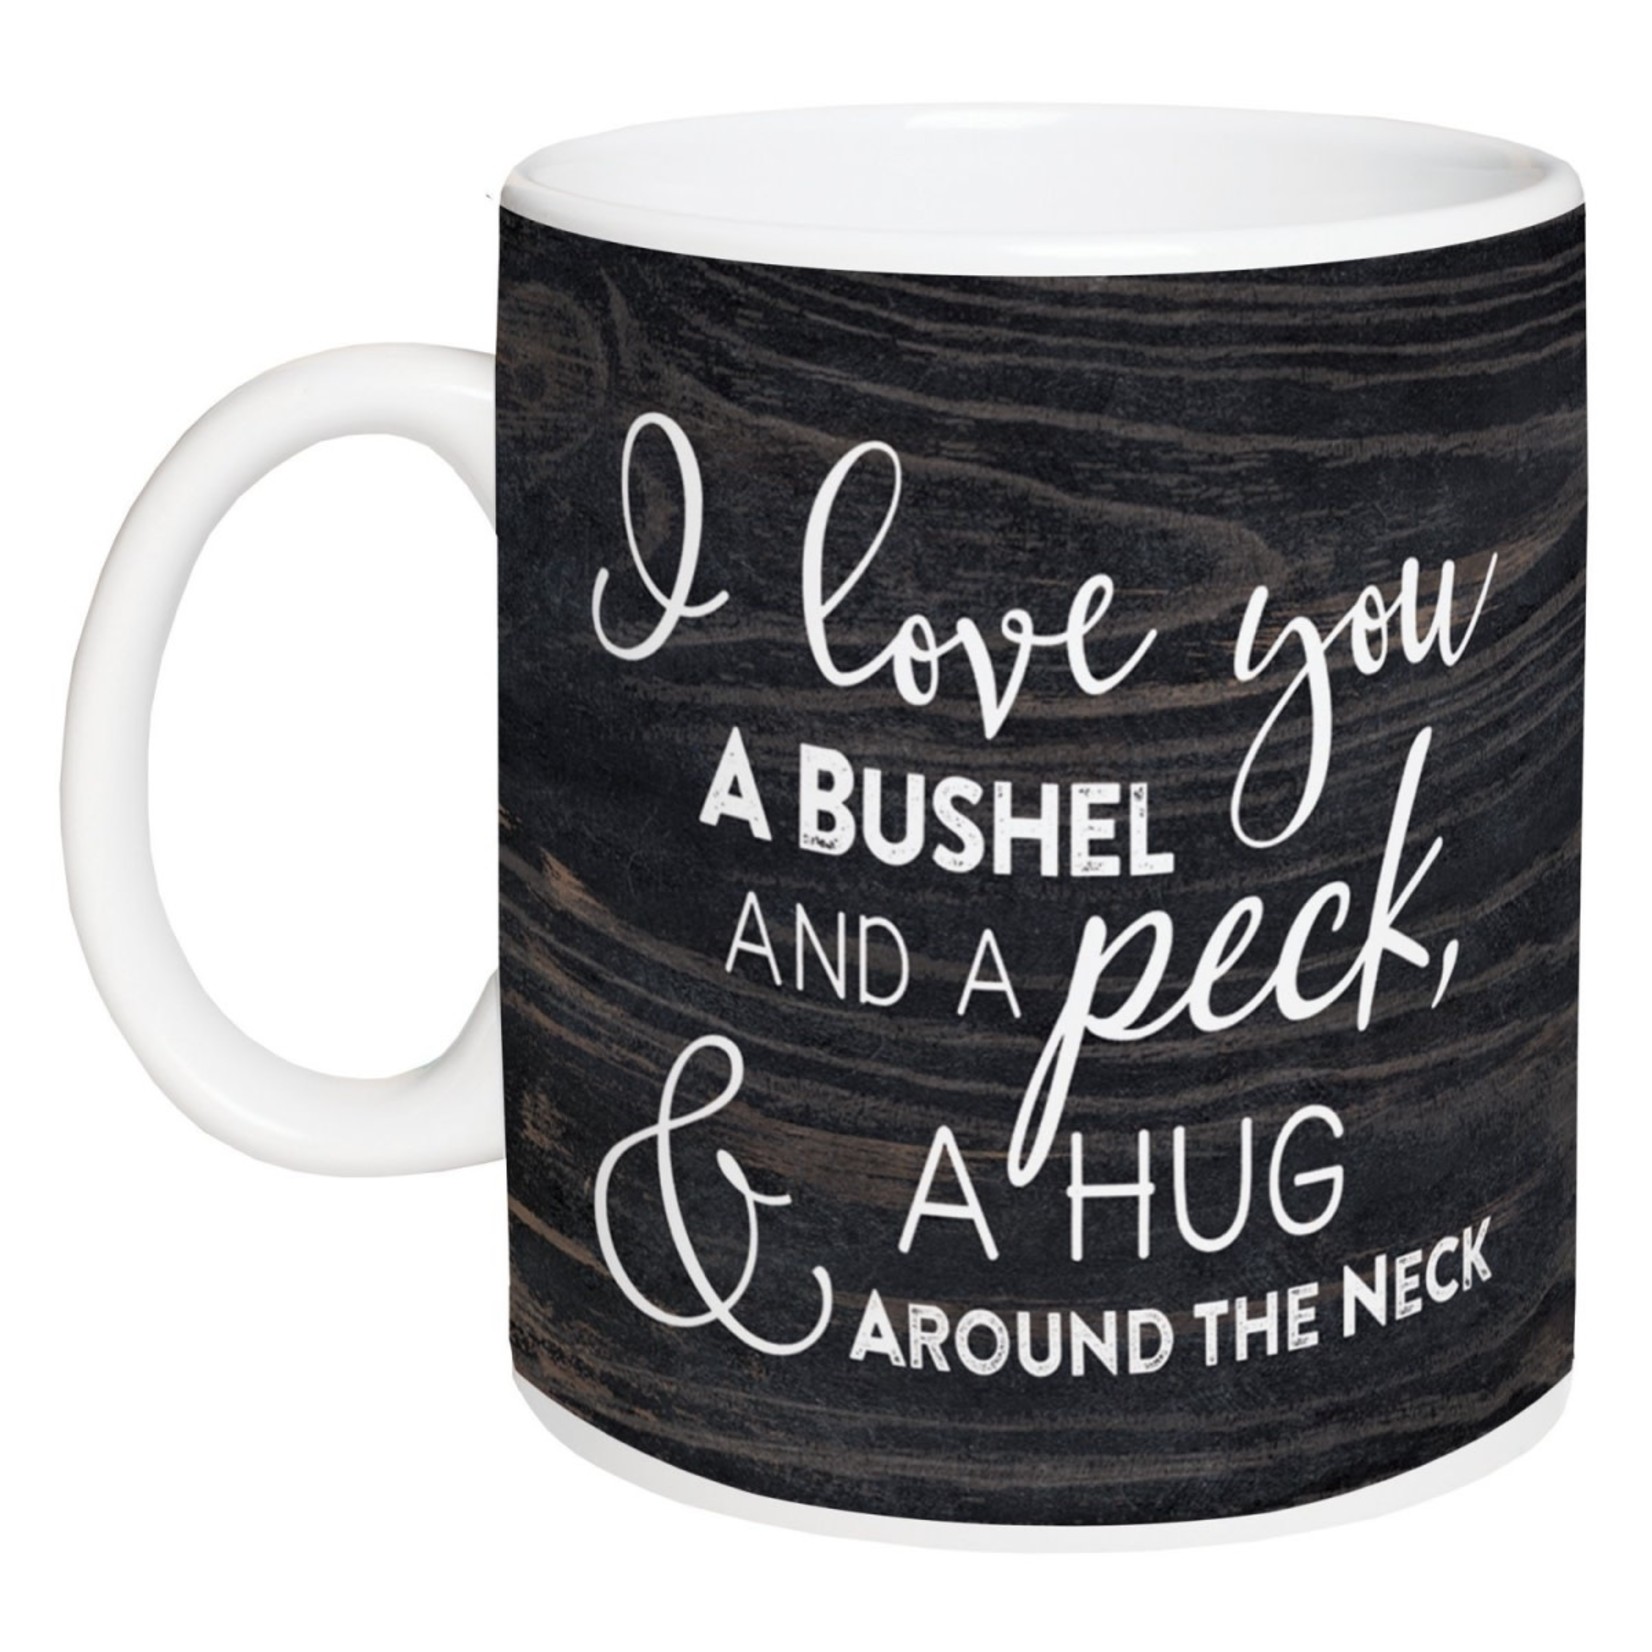 I love you bushel & peck mug